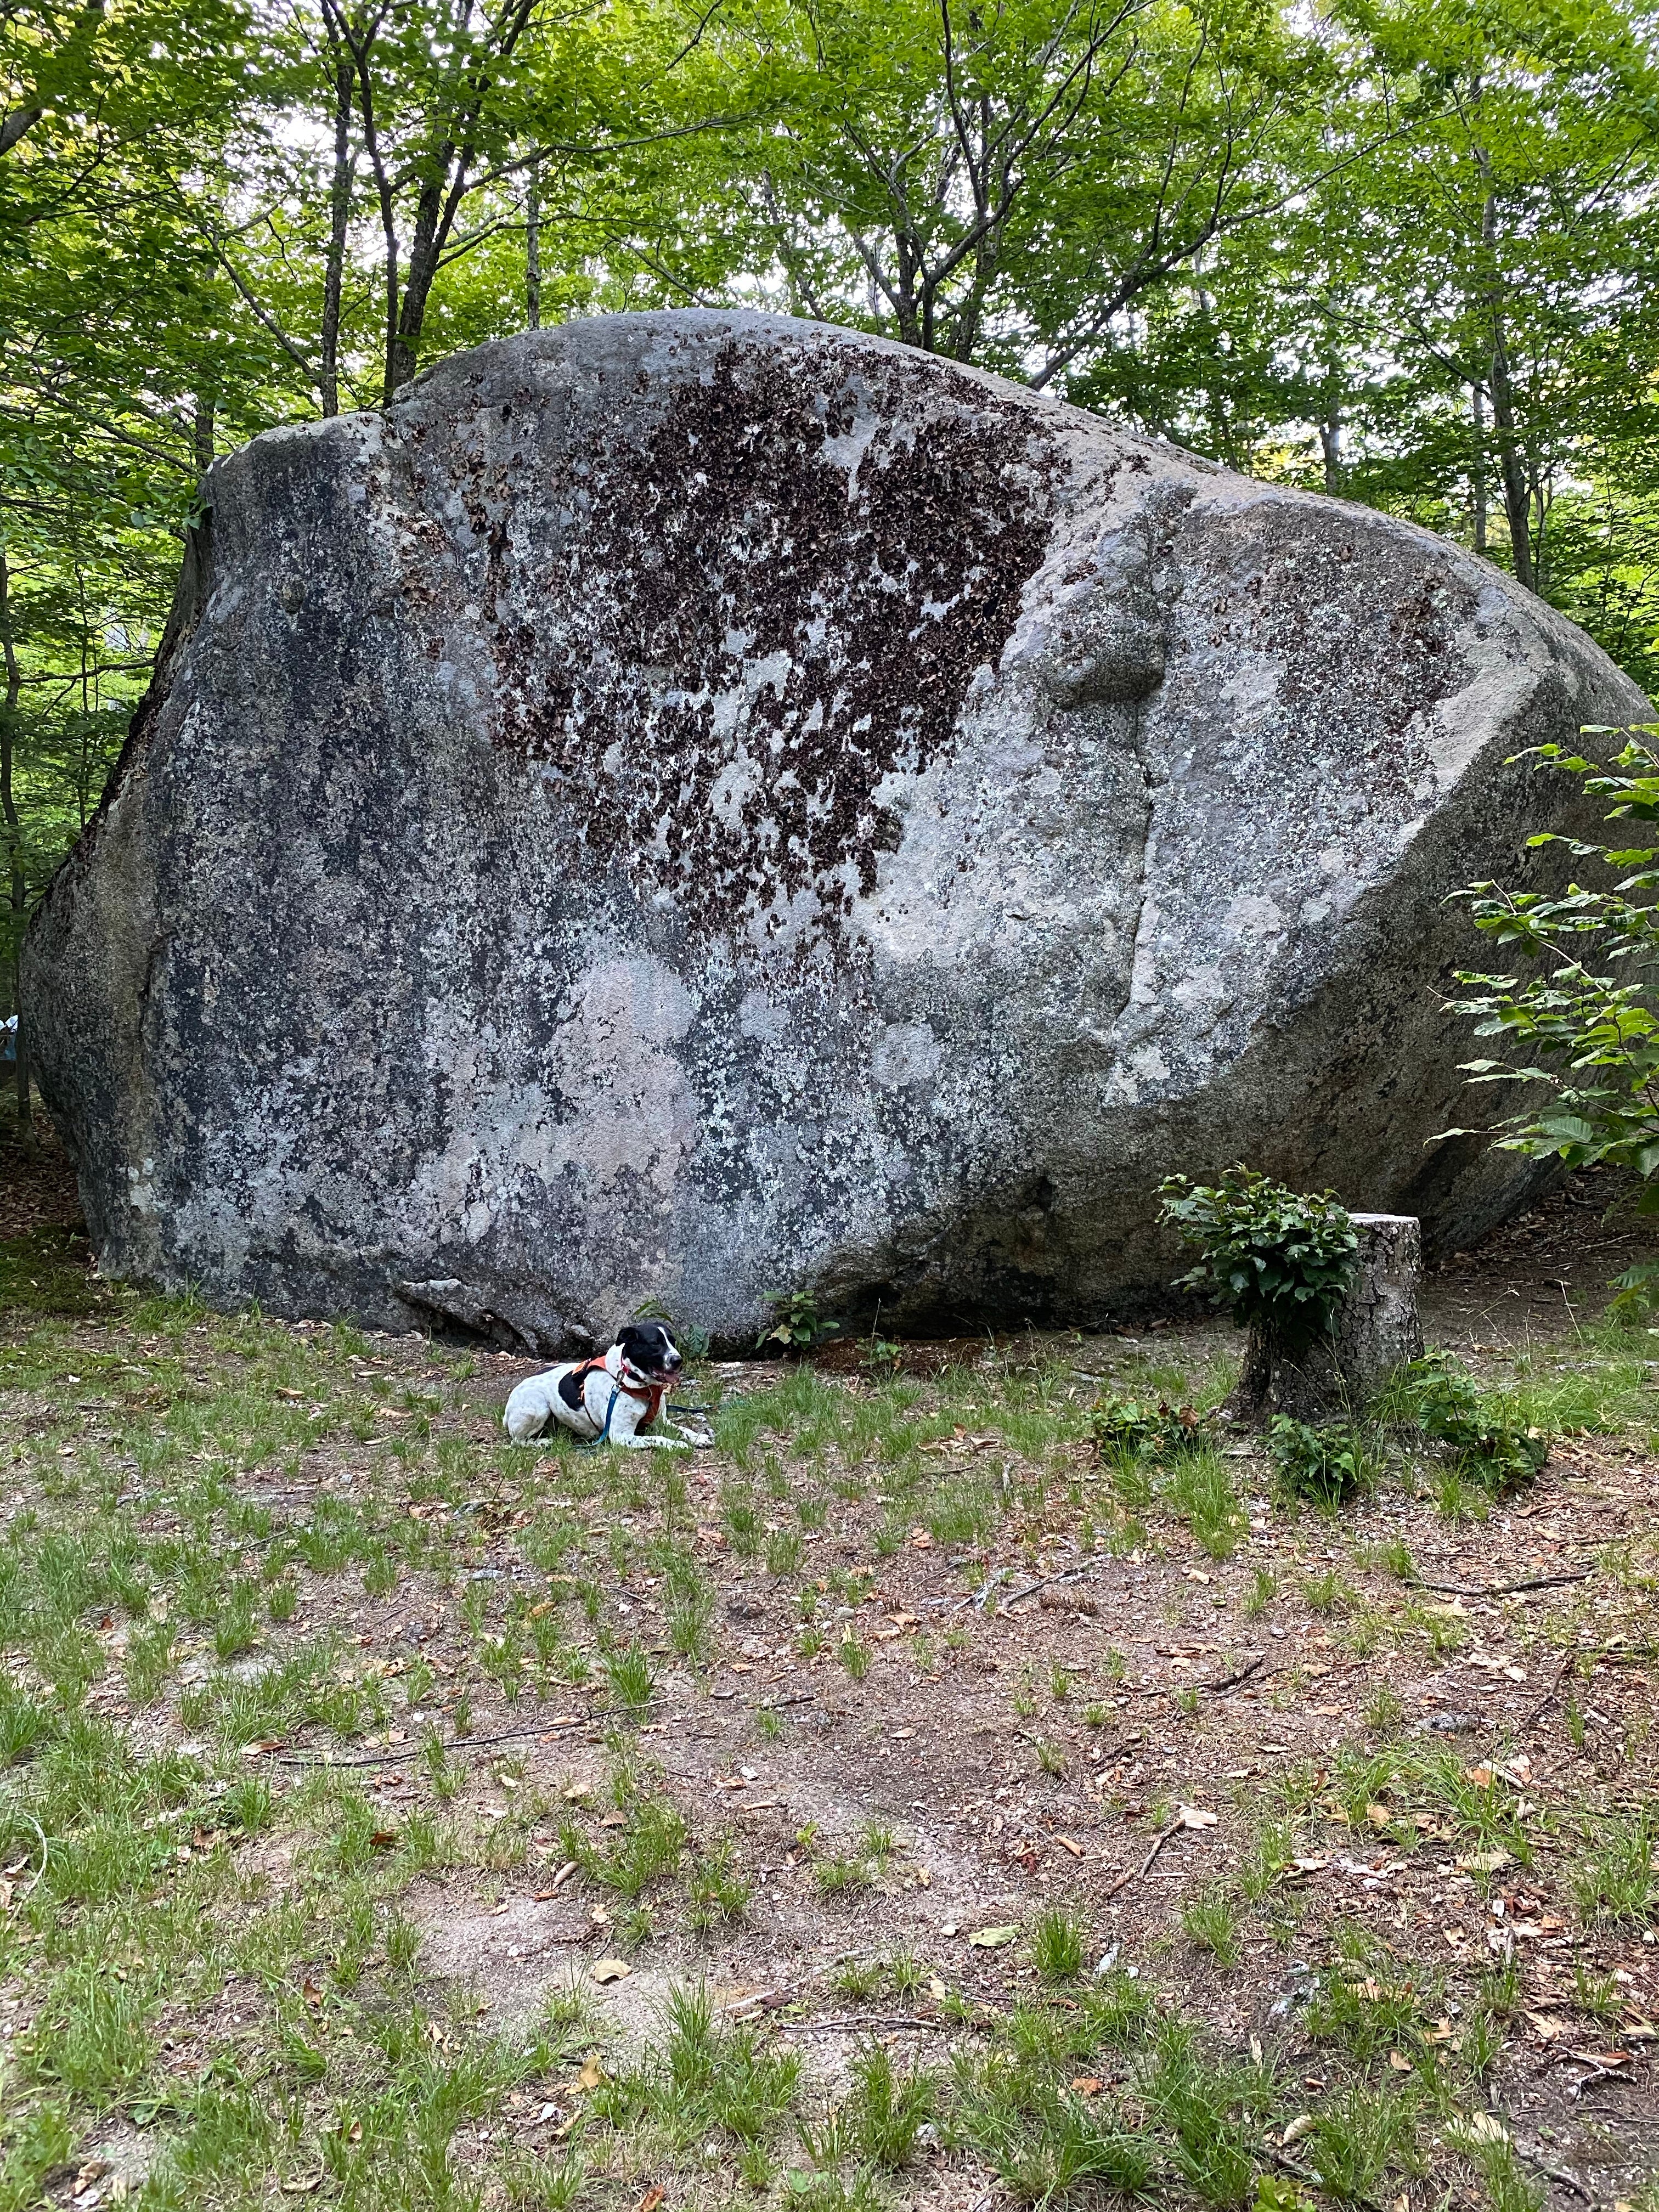 The big rock